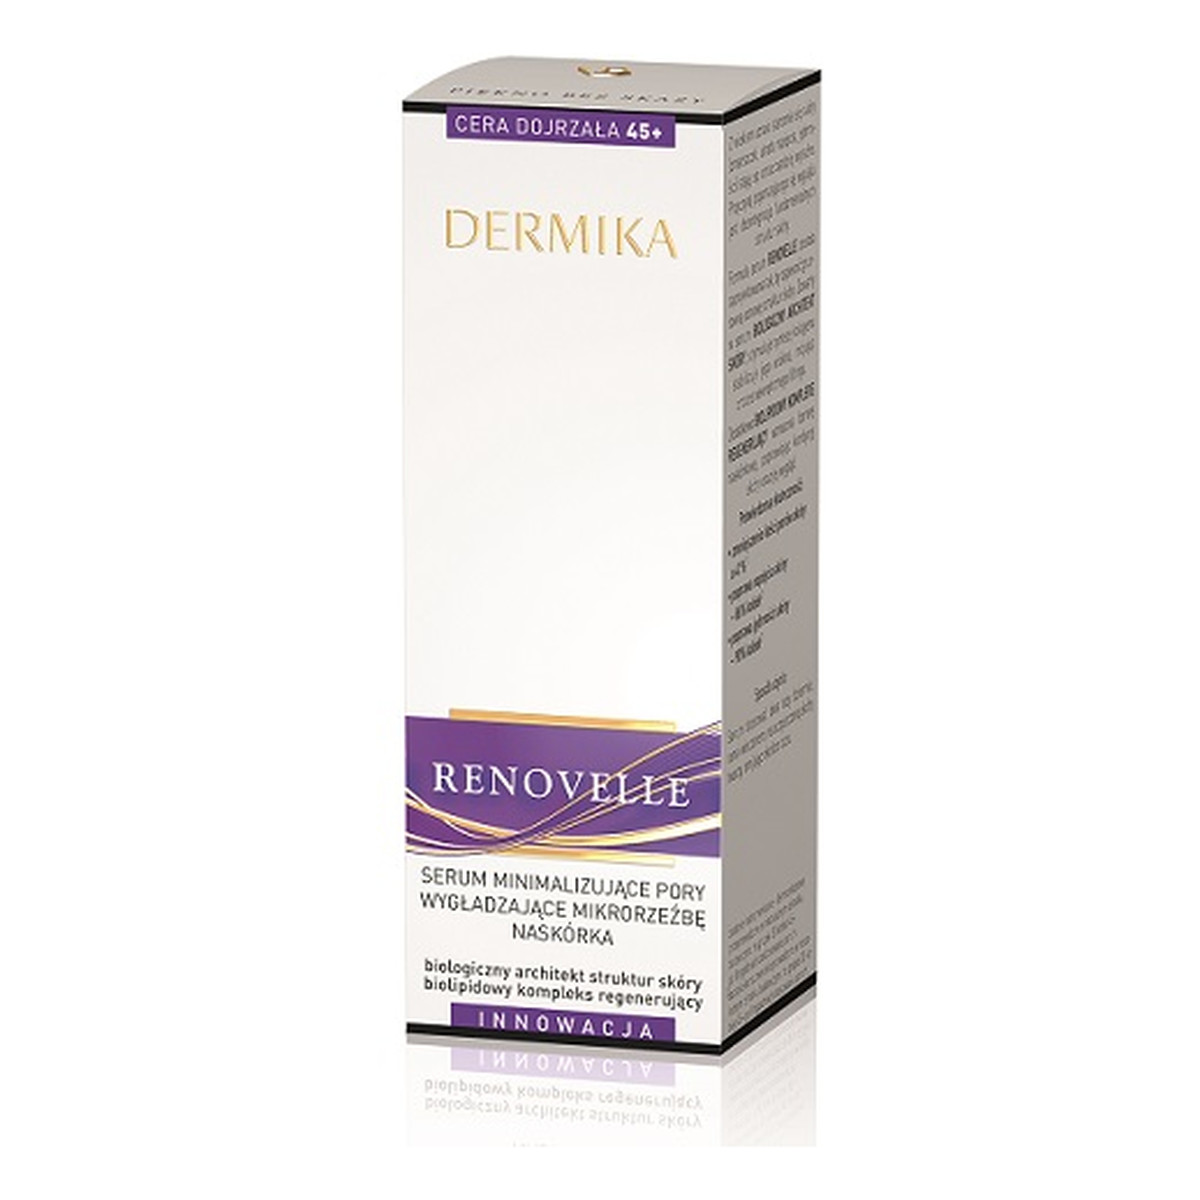 Dermika Renovelle 45+ Serum Minimalizujące Pory i Wygładzające Mikrorzeźbę Naskórka 30ml